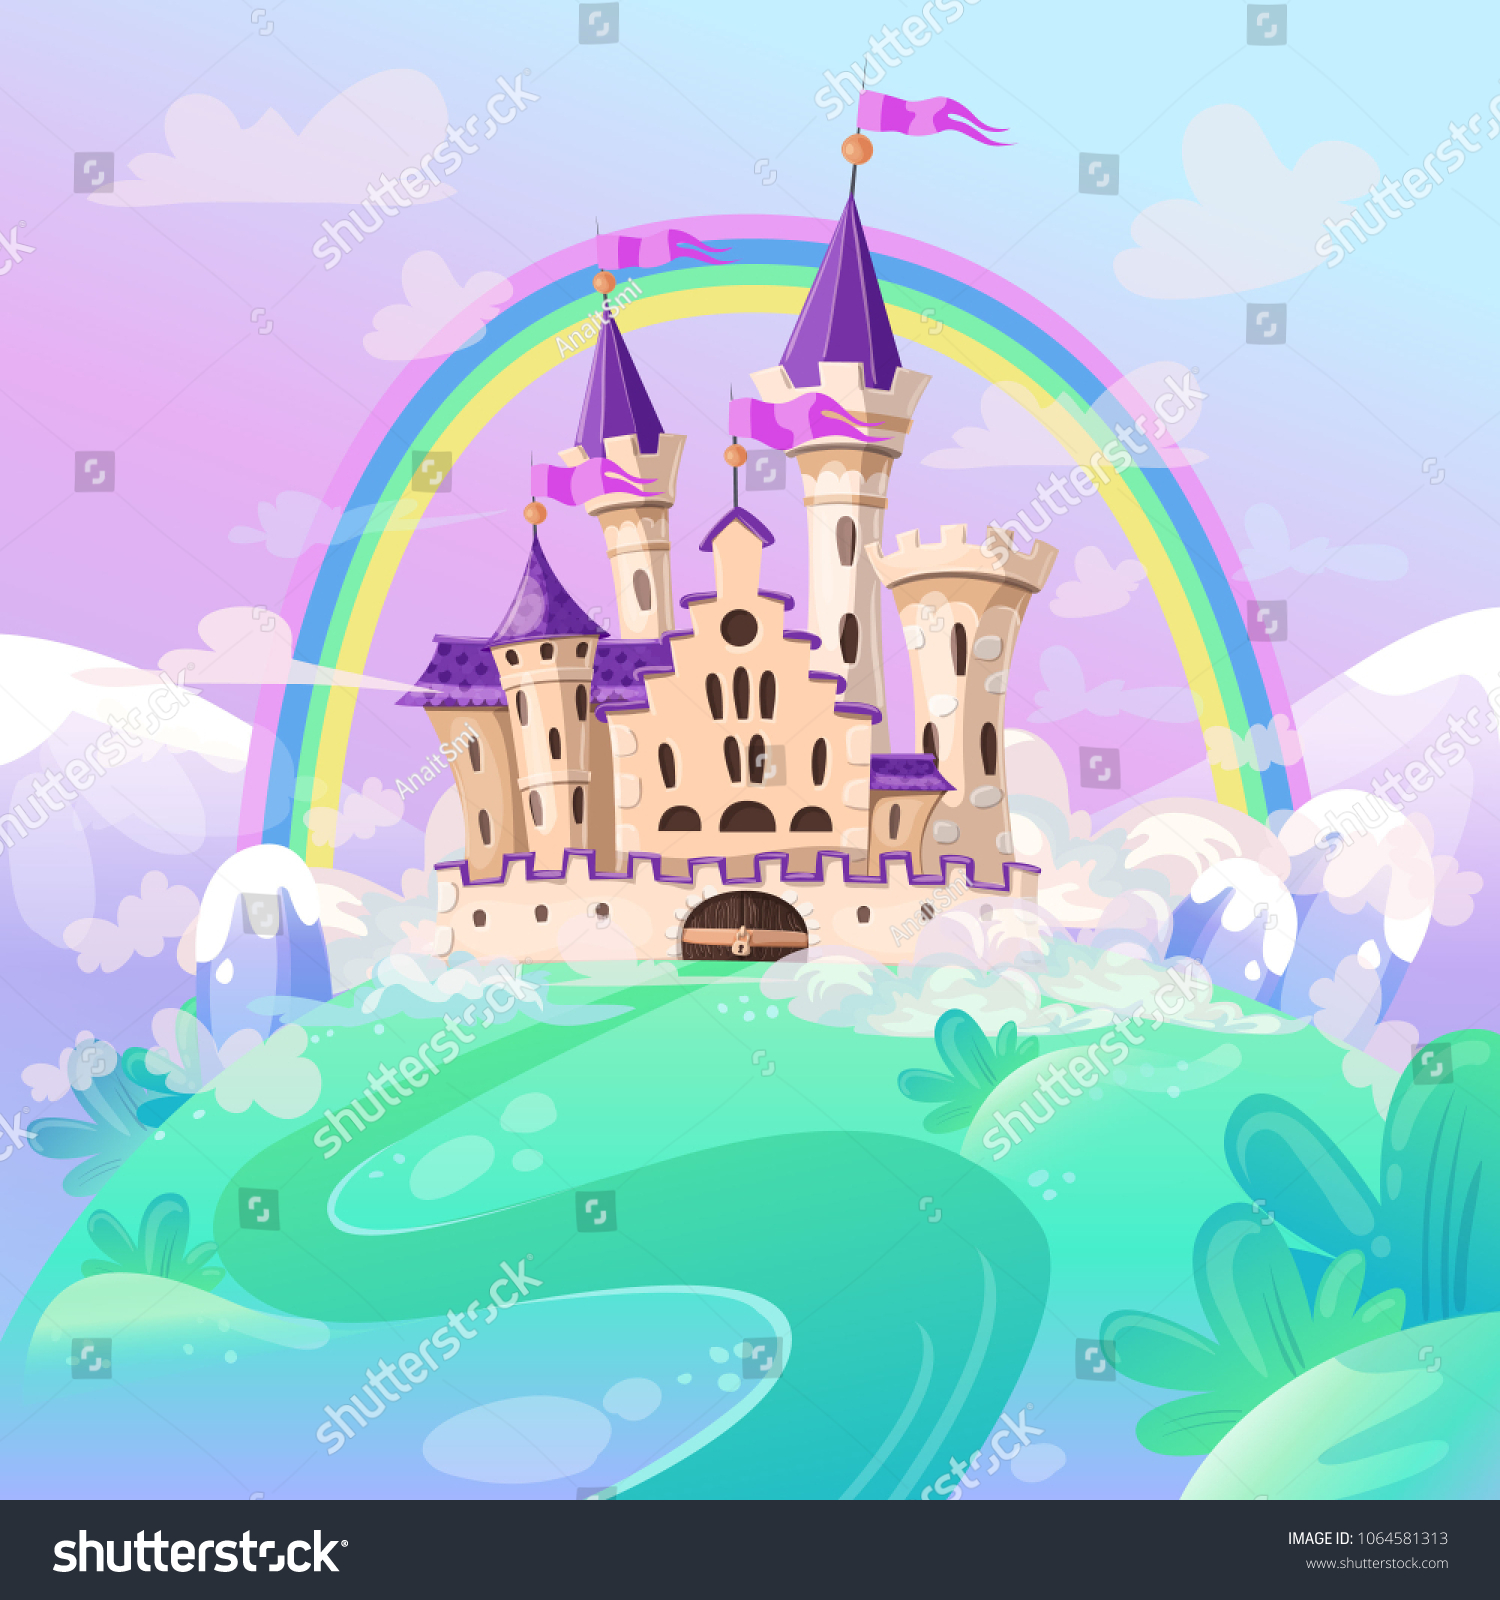 SVG of FairyTale cartoon castle. Cute cartoon castle. Fantasy fairy tale palace with rainbow. Vector illustration. svg